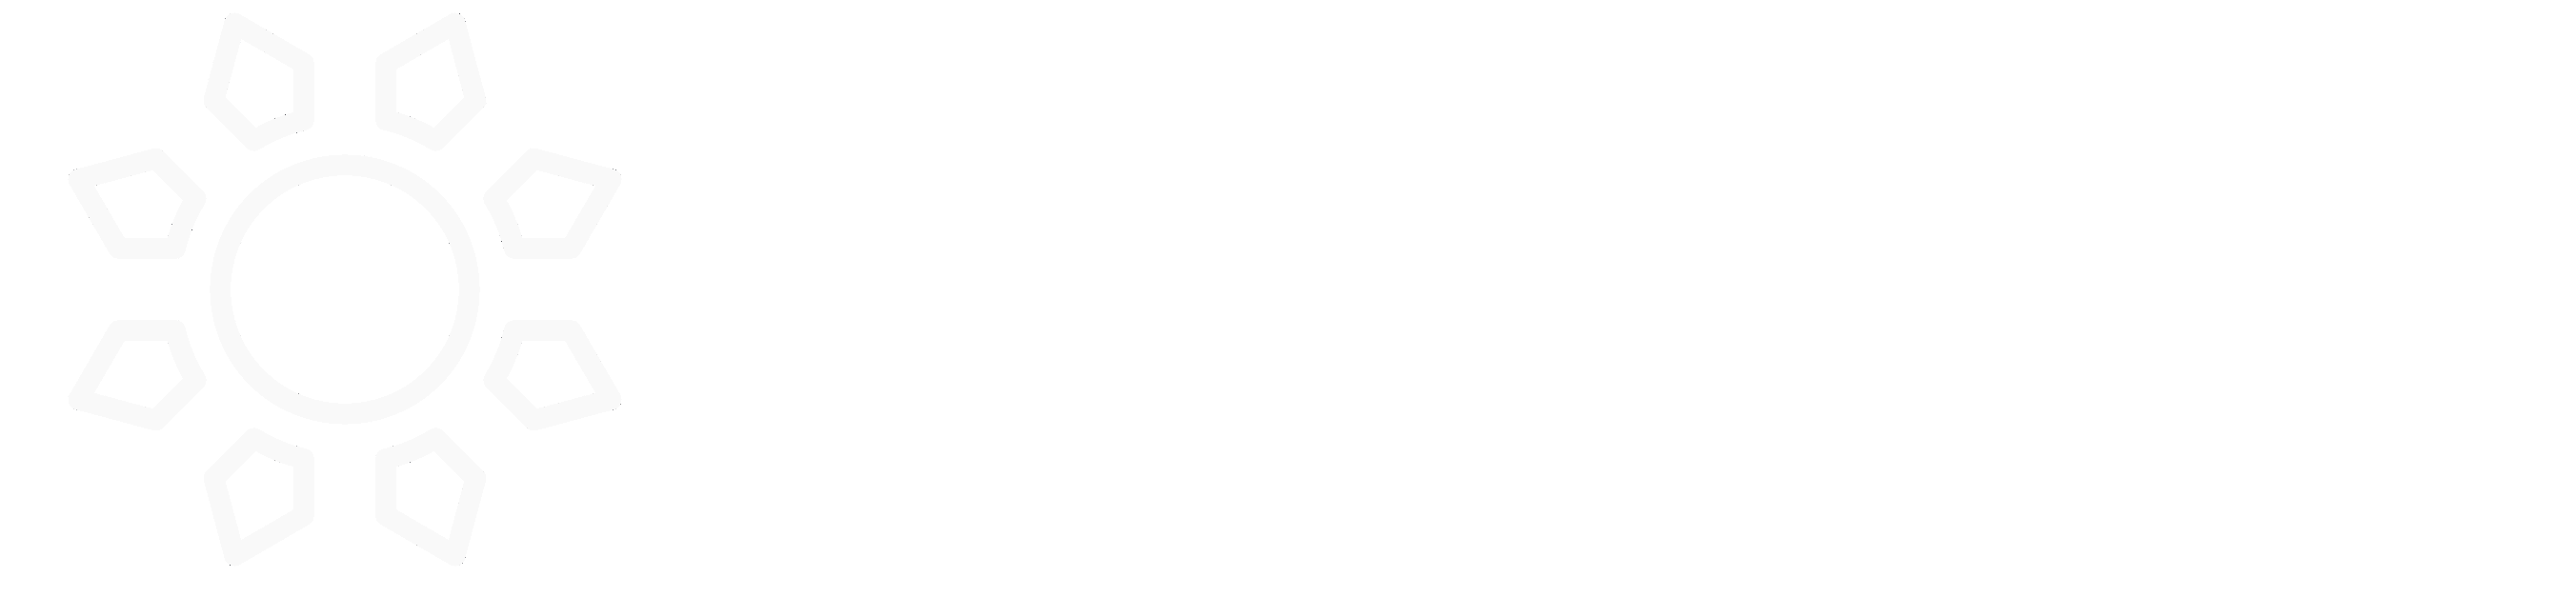 Codeiful sun logo